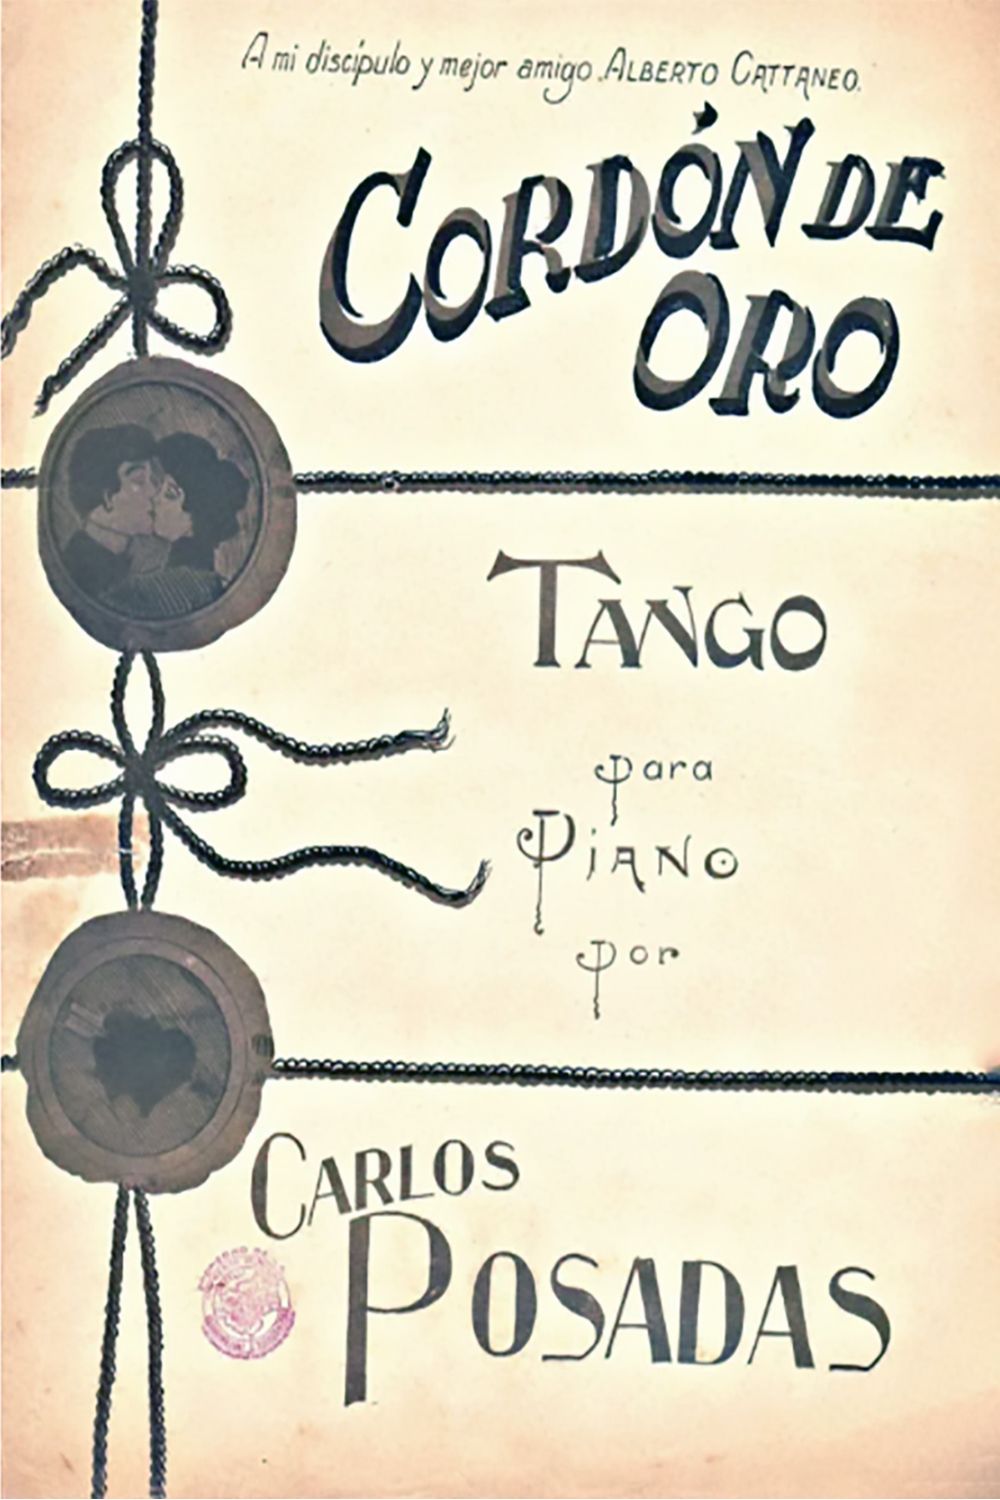 "Cordón de oro", Argentine Tango music sheet cover.